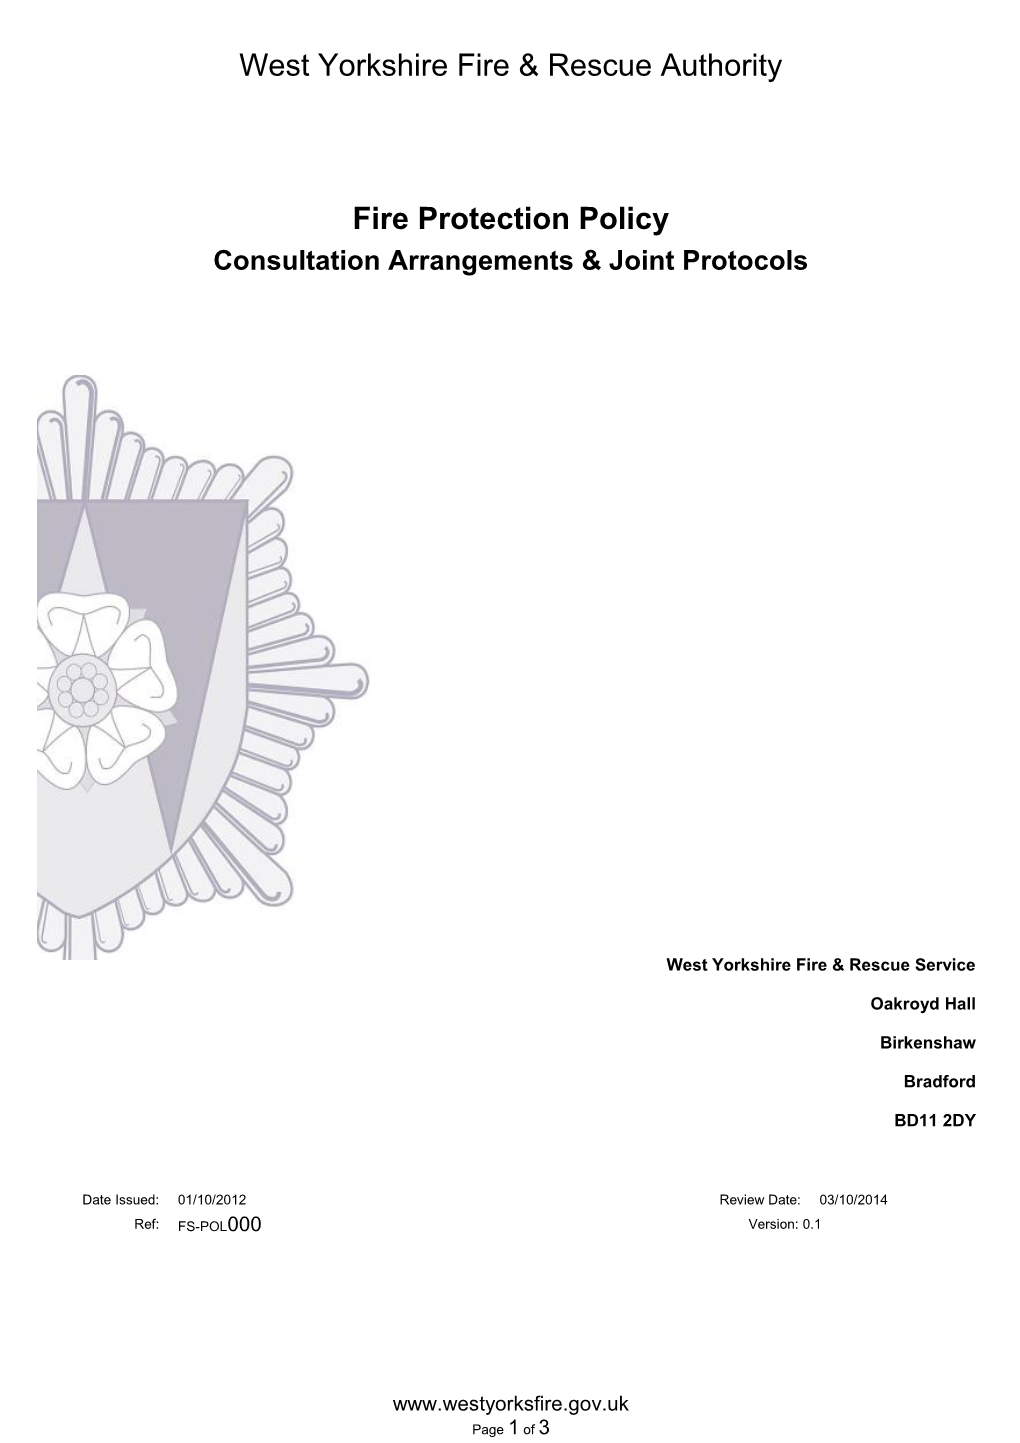 Consultation Arrangements & Joint Protocols